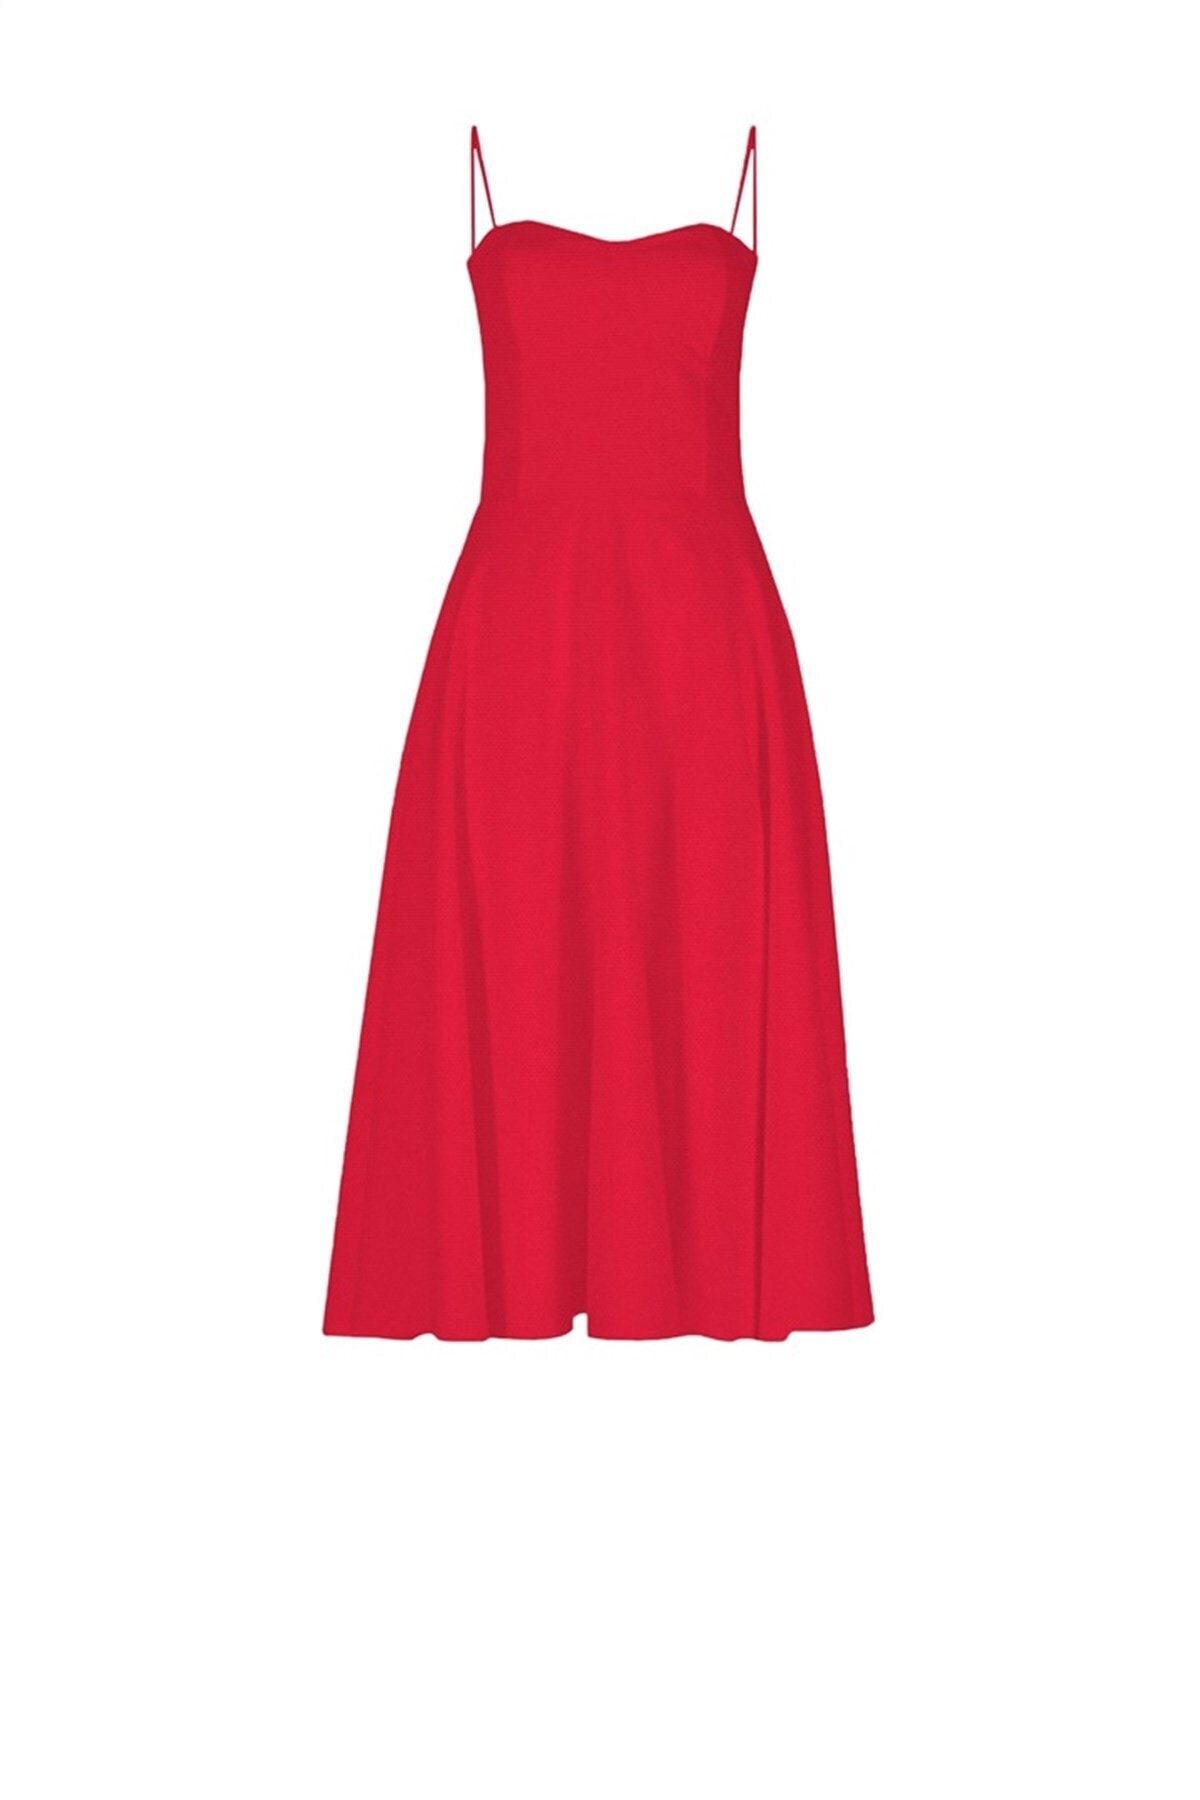 AtölyeNo6 Kadın Kırmızı Askılı  Volan Elbise AT2222